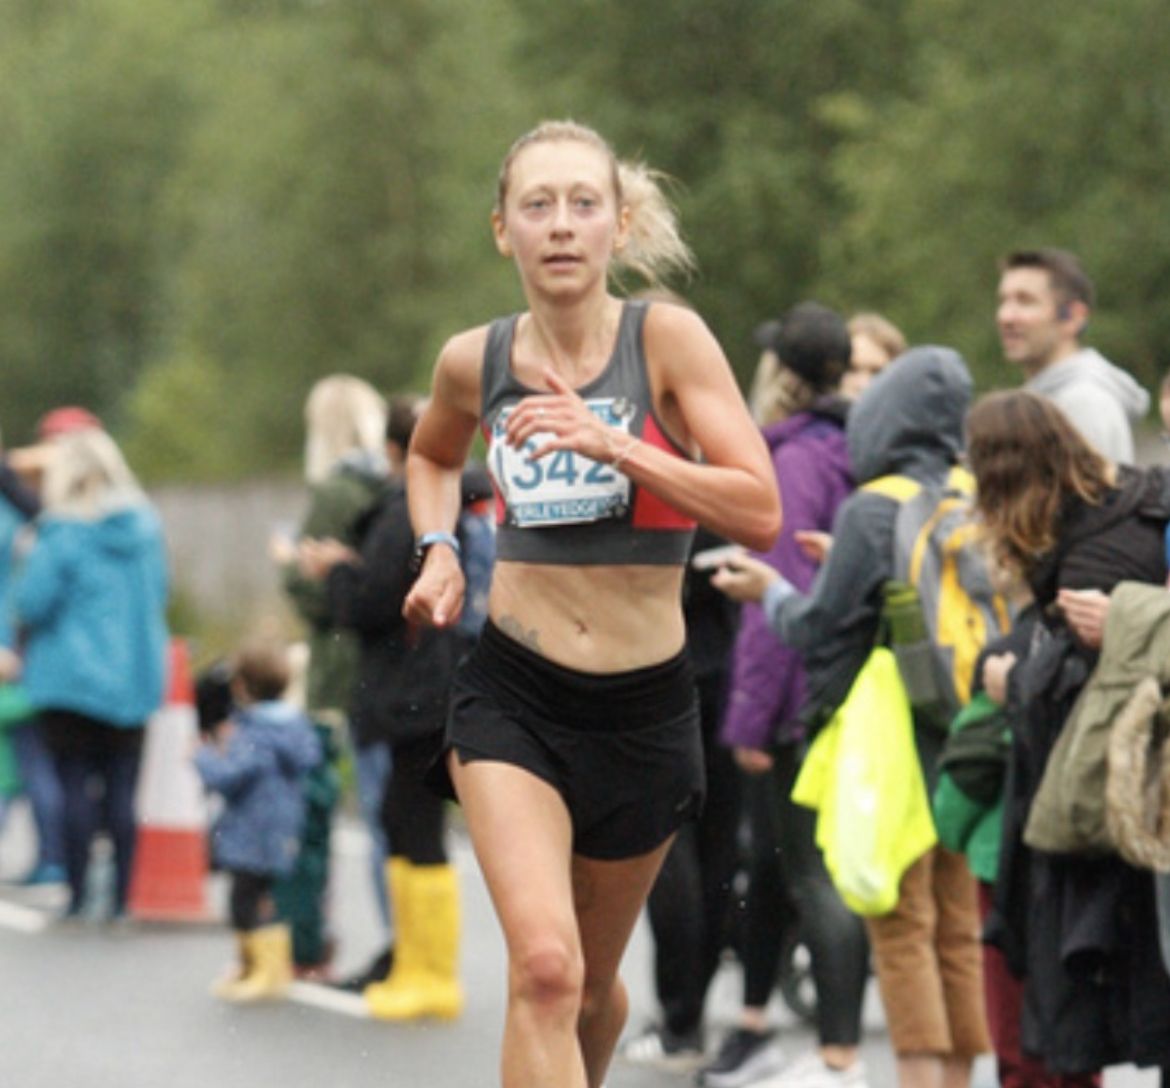 Natalie Bunce running the Alderley Edge 10k